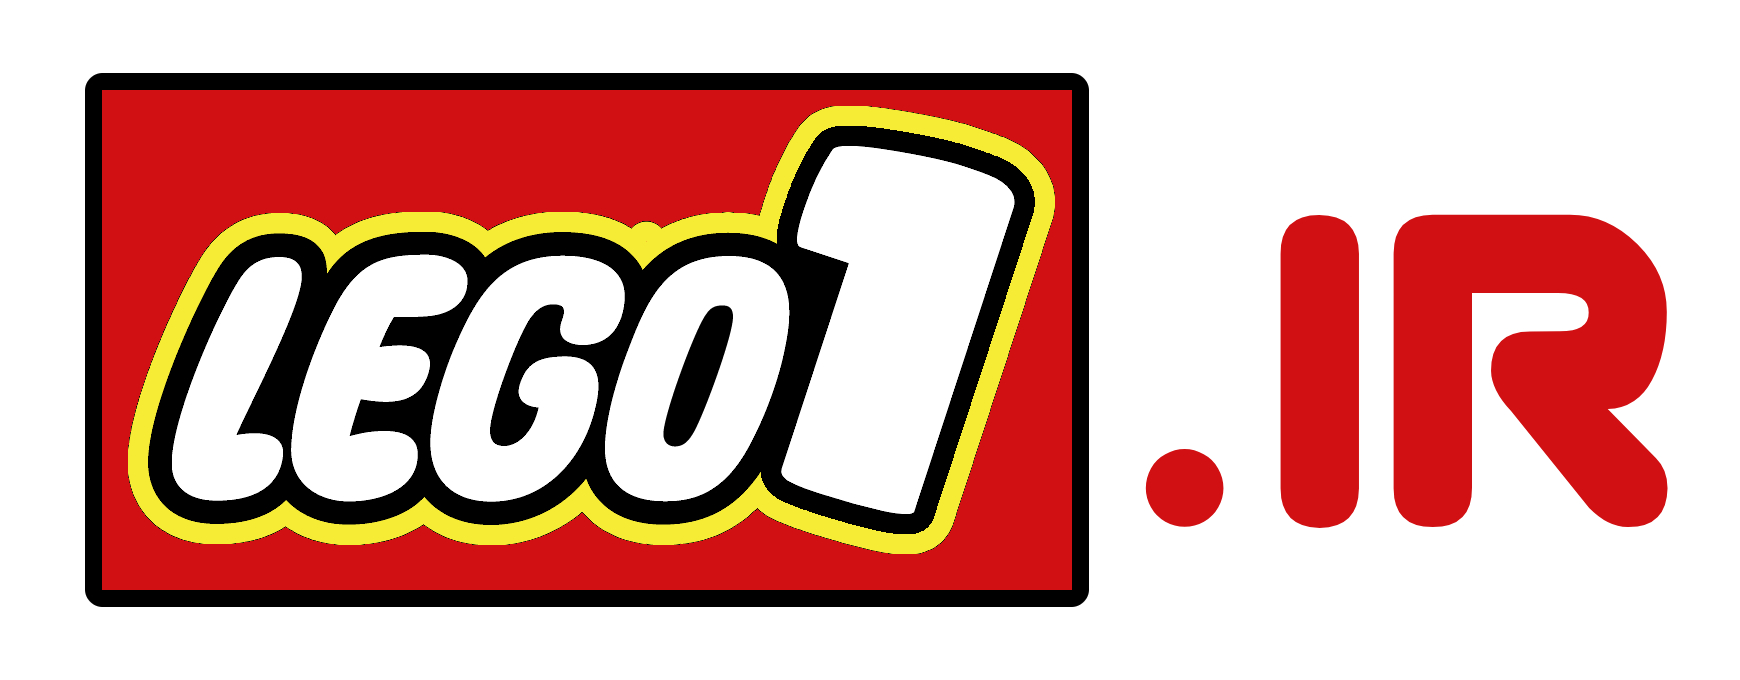 فروشگاه لگو وان (LEGO1.ir)